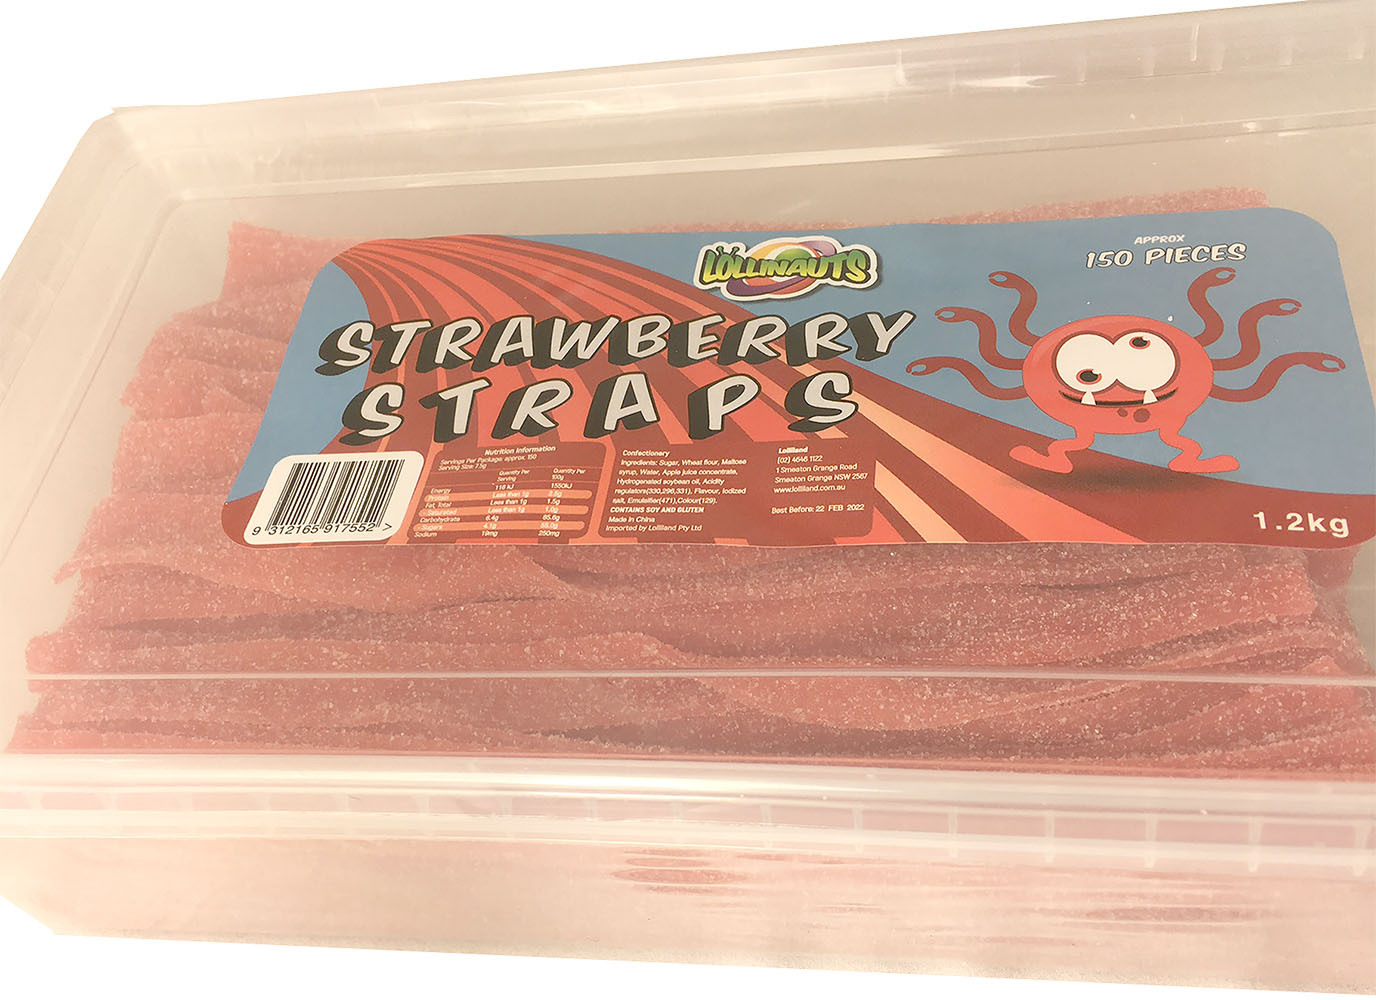 Lollinauts Strawberry Sour Straps Tub 1.2kg - 150 Pieces